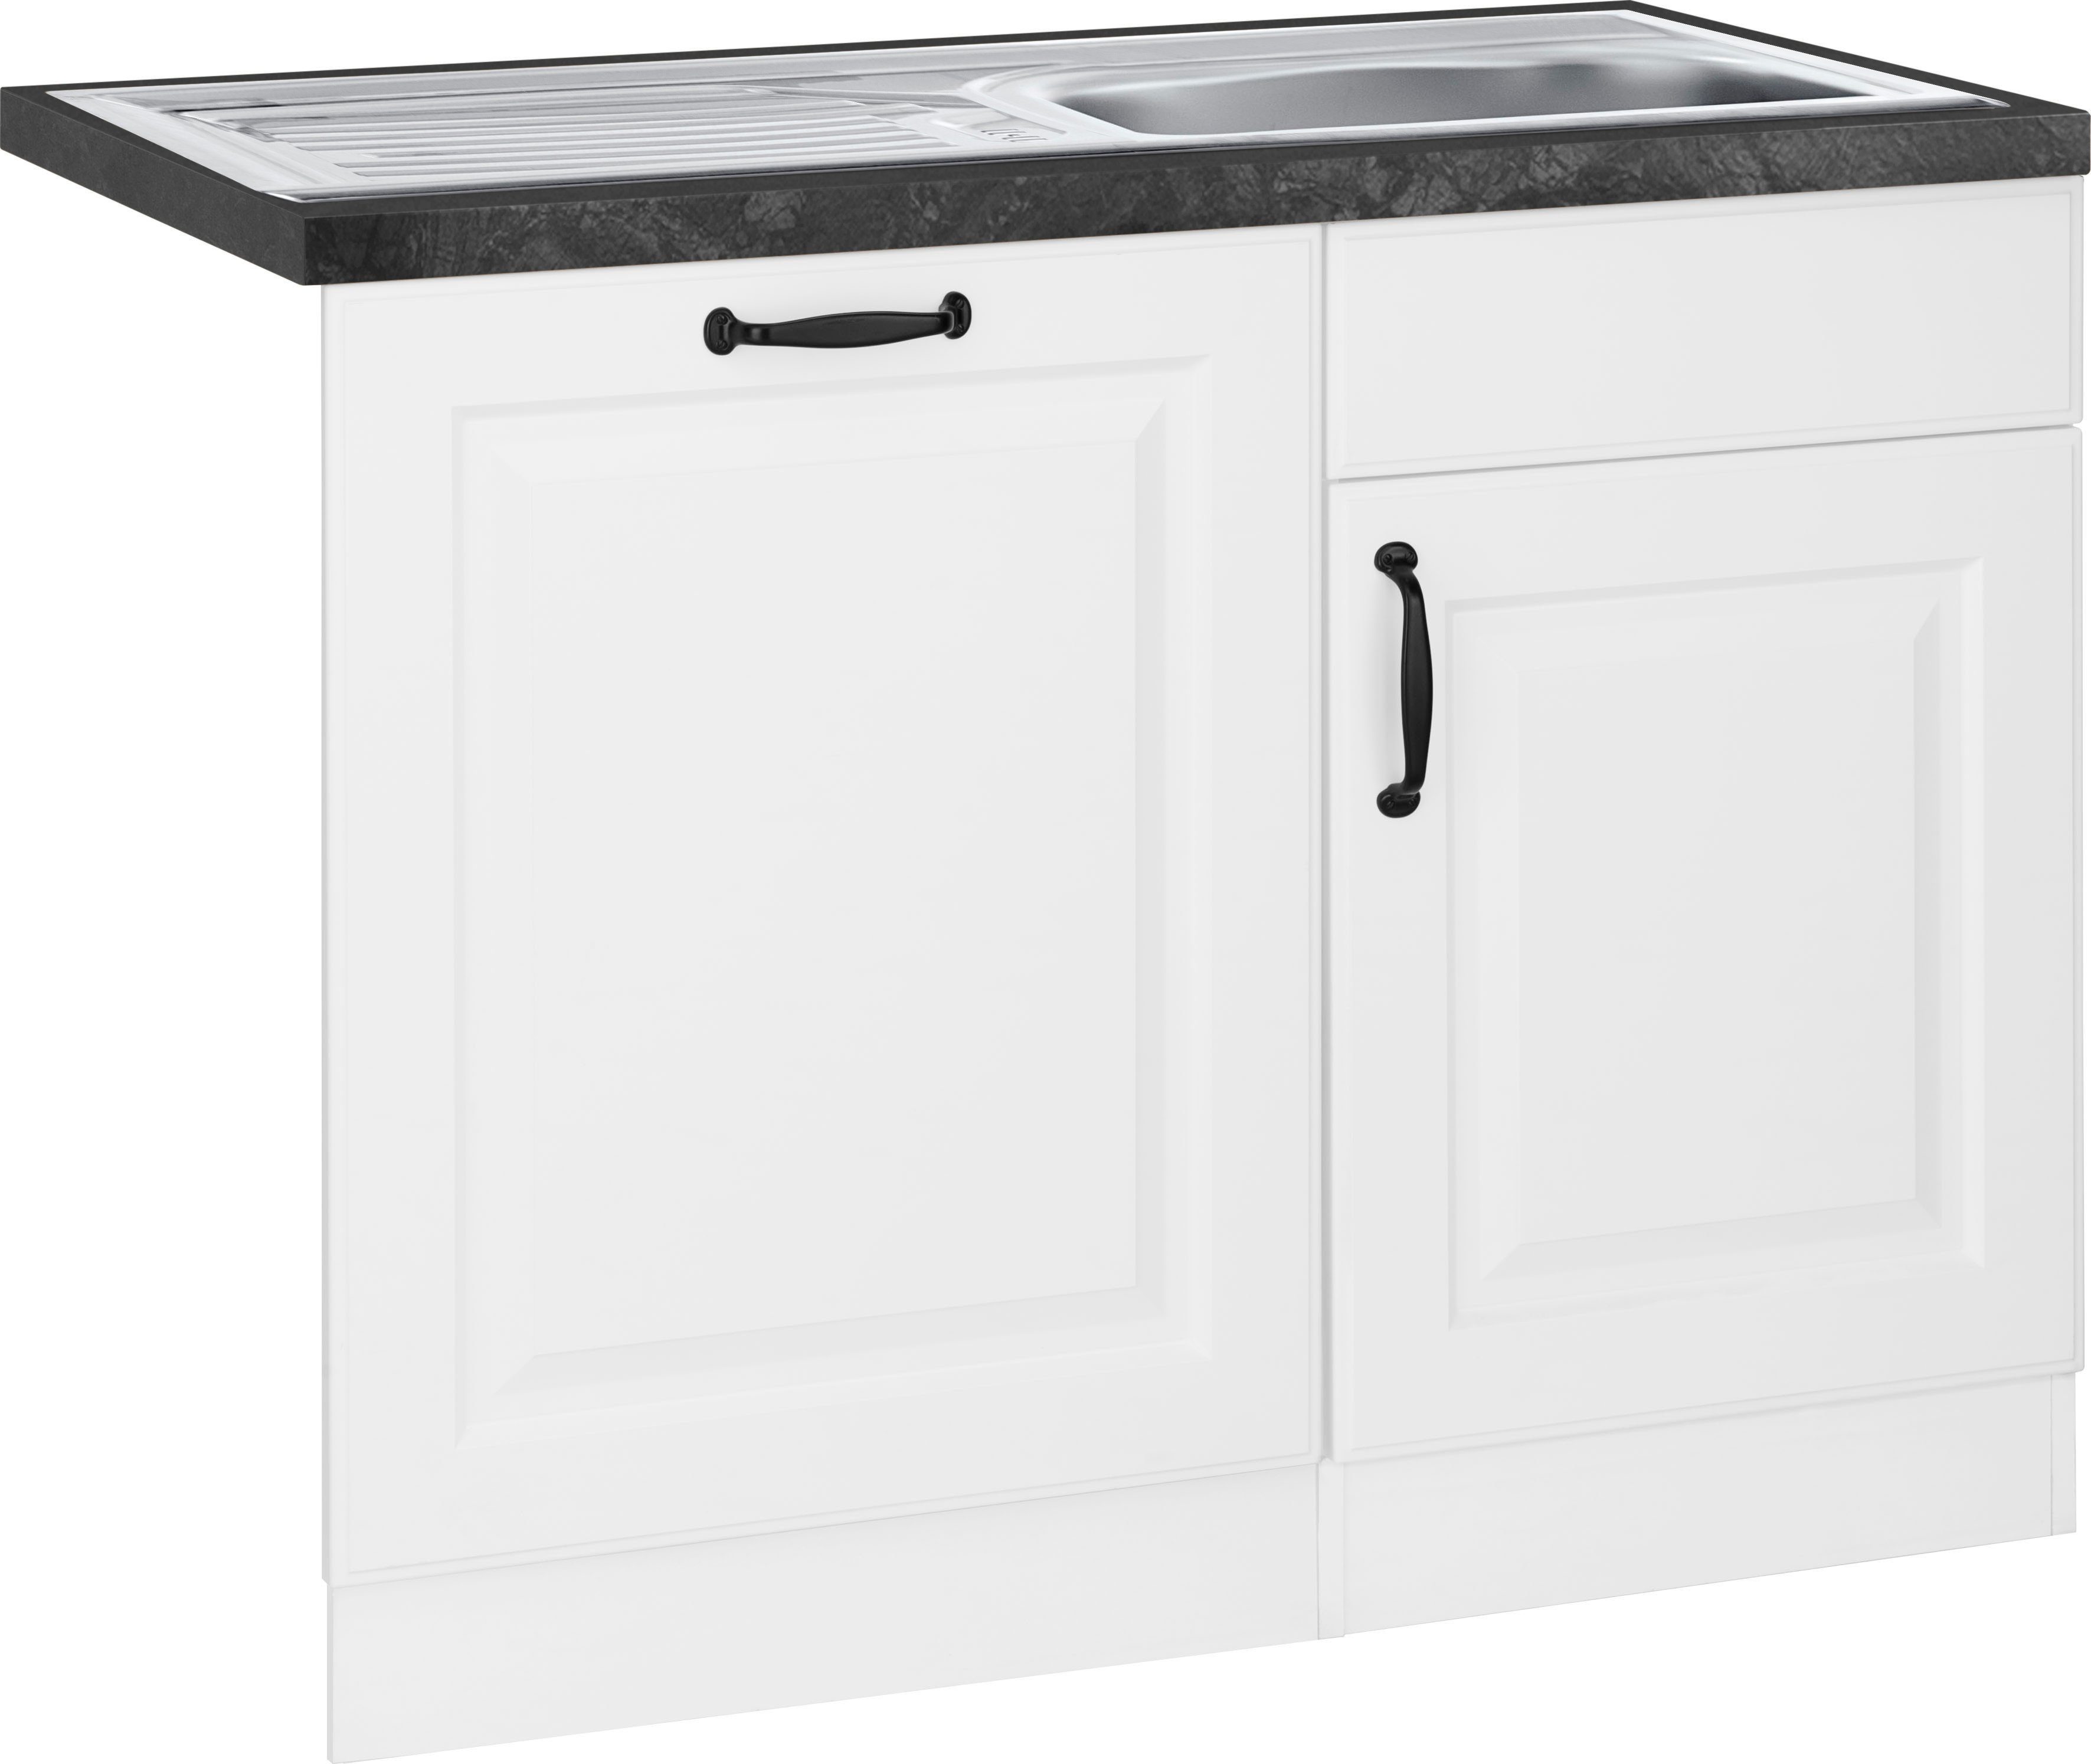 wiho Küchen Spülenschrank Erla 110 cm breit, inkl. Tür/Sockel für Geschirrspüler weiß/granit schwarz | weiß